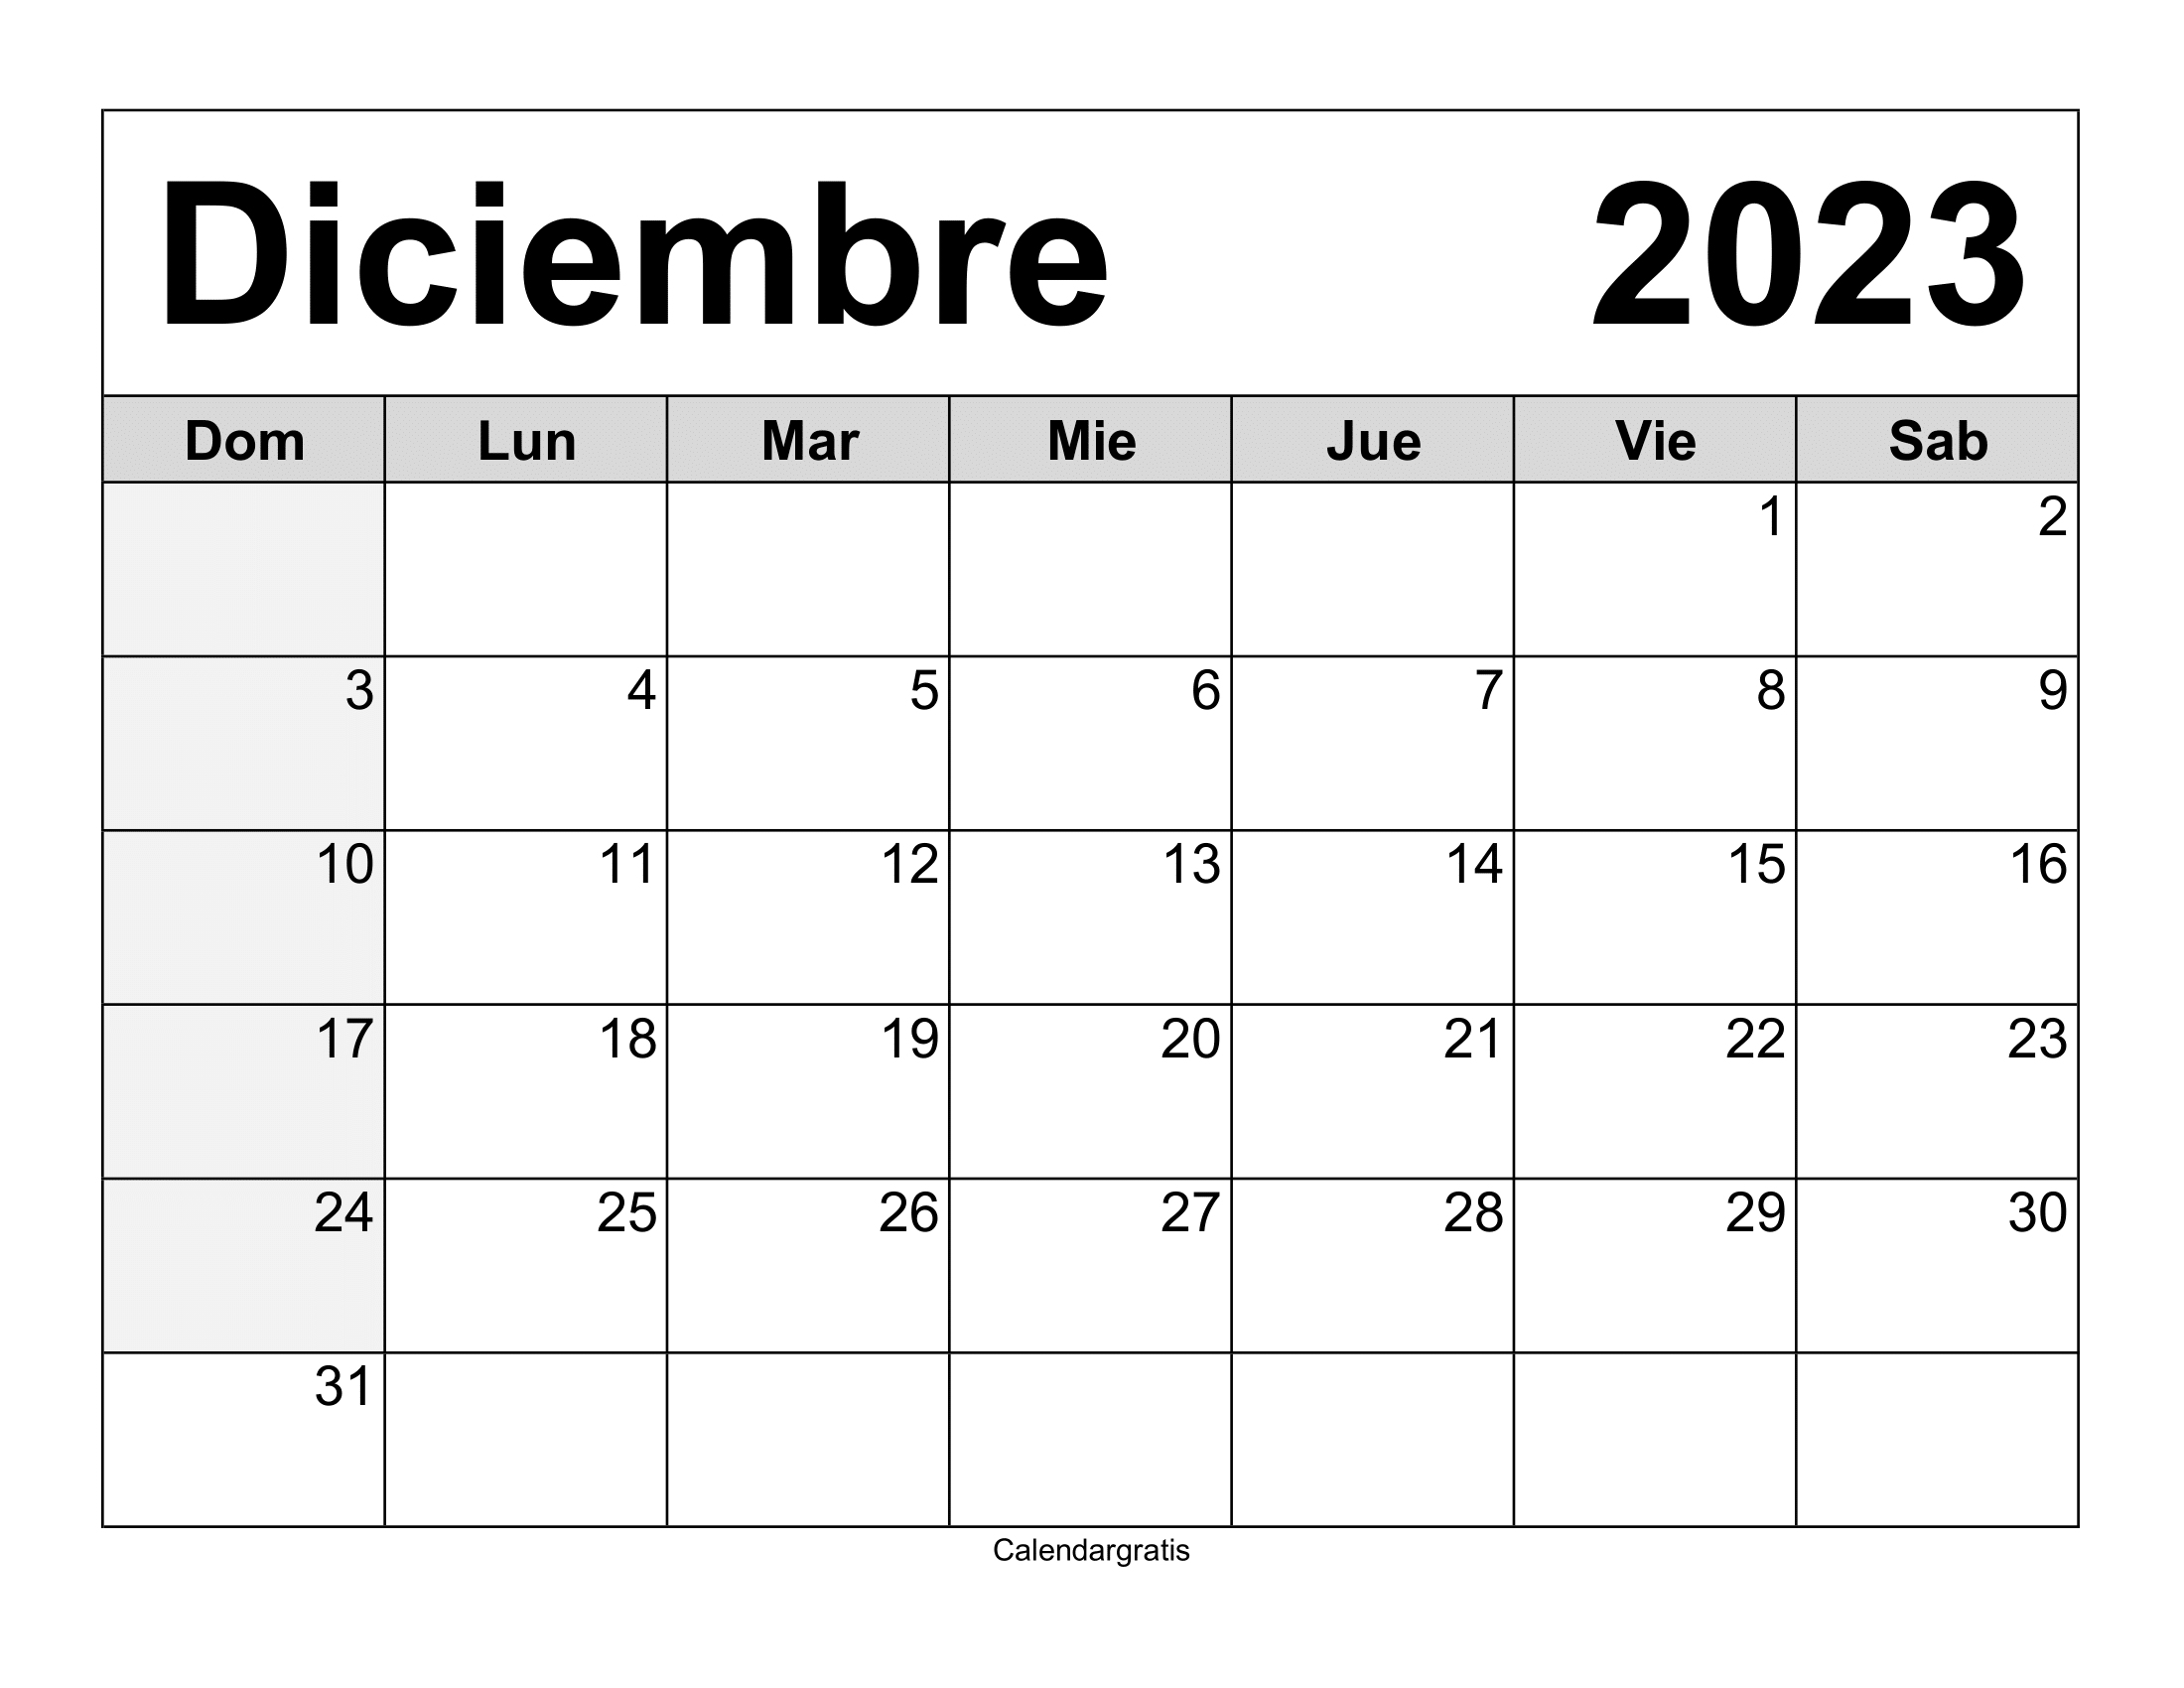 Calendario diciembre 2023 para imprimir